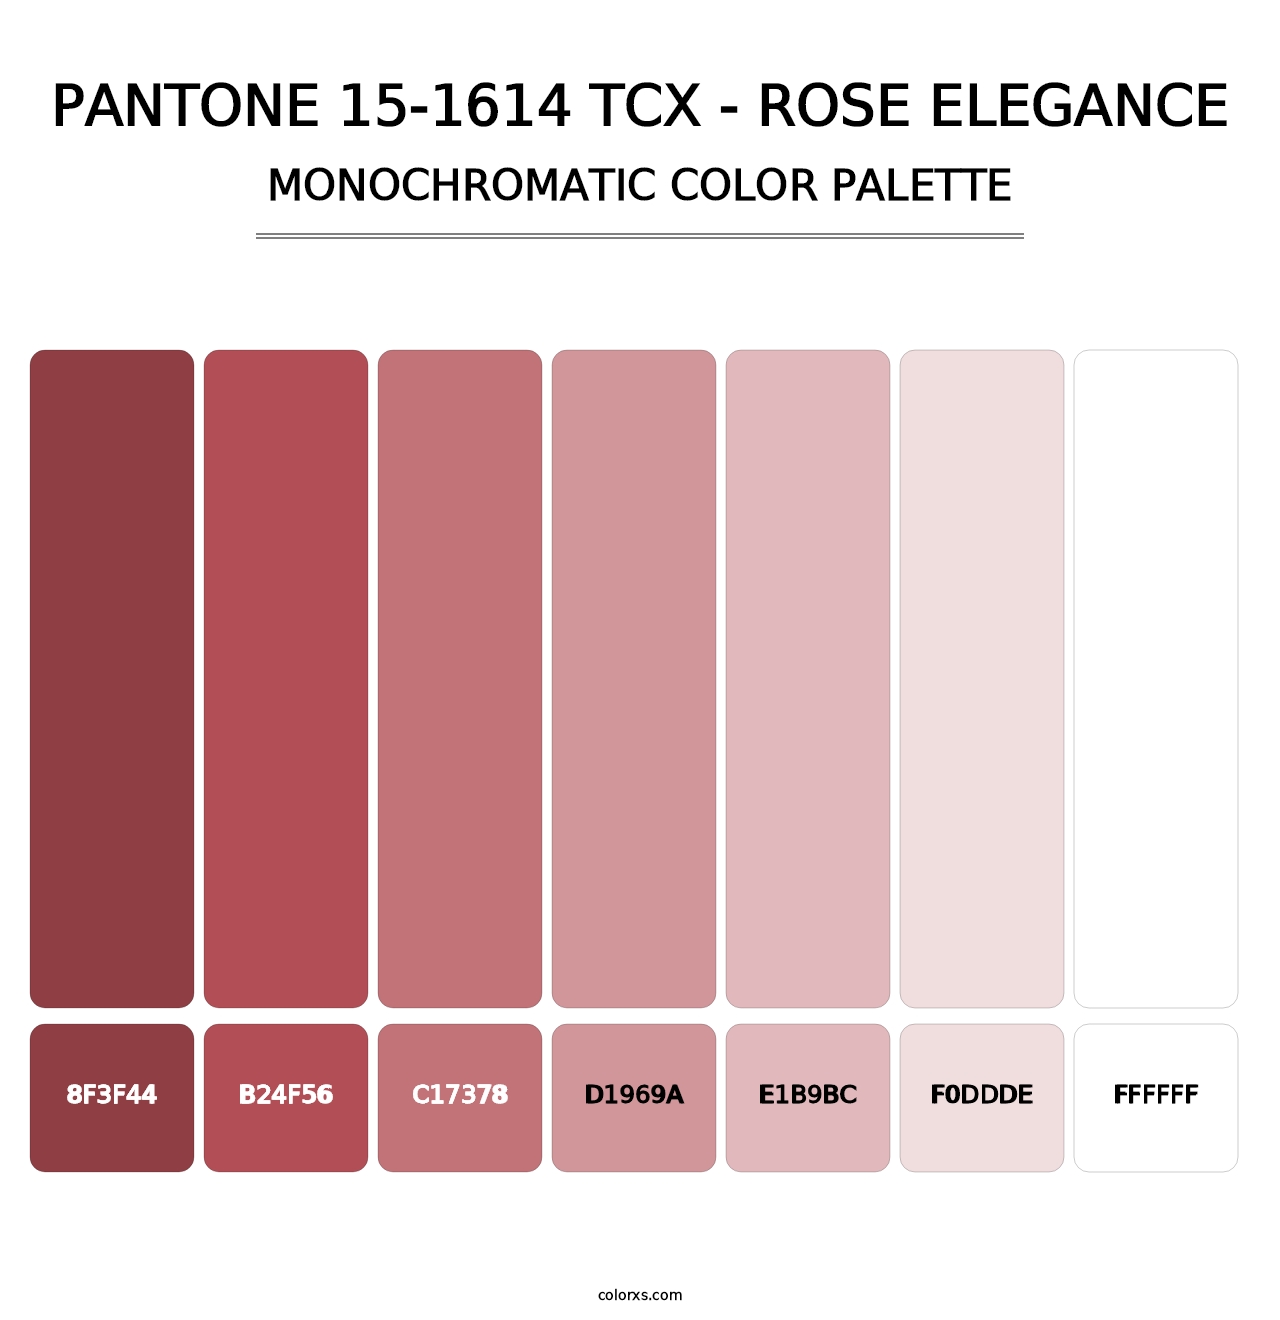 PANTONE 15-1614 TCX - Rose Elegance - Monochromatic Color Palette